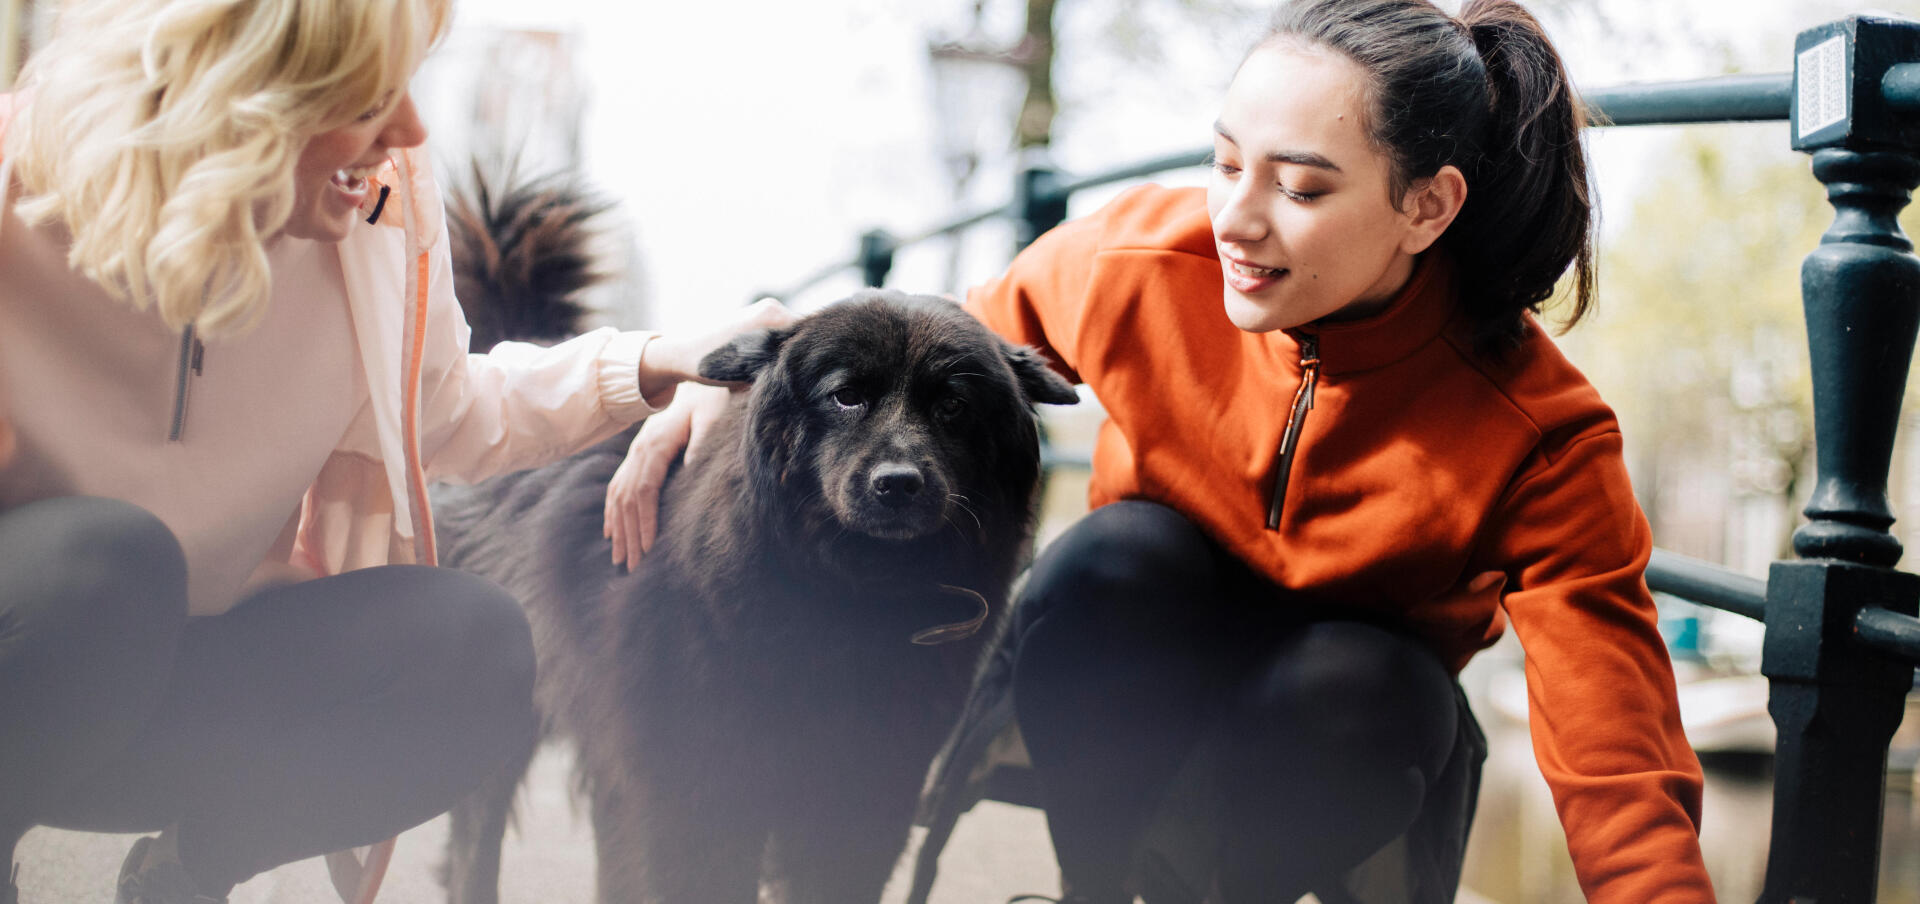 6 bonnes raisons de courir avec son chien